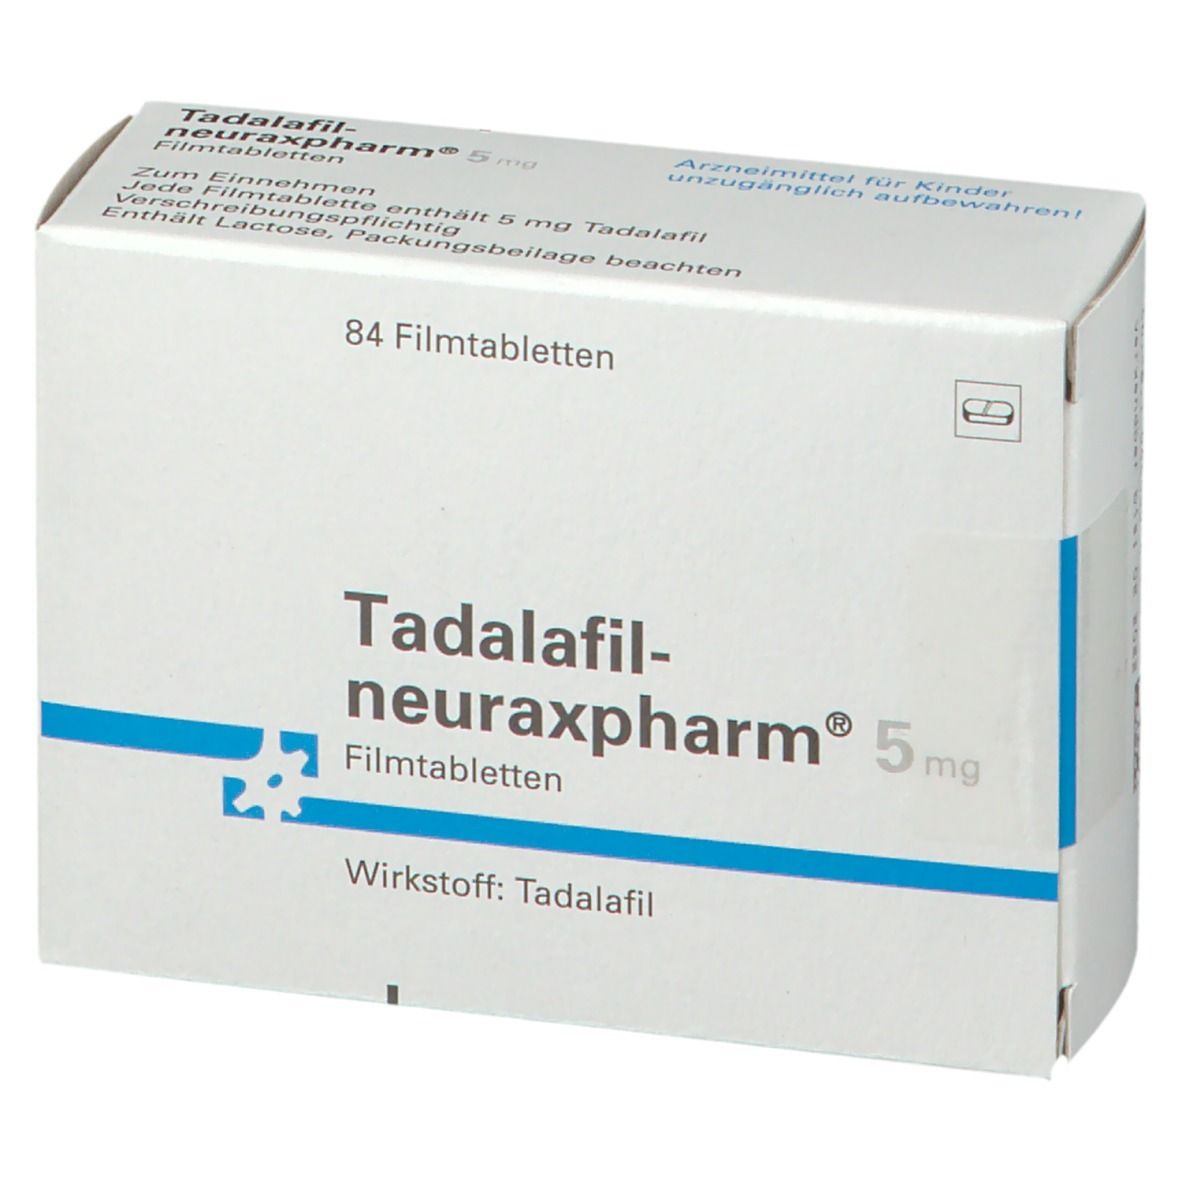 Tadalafil-neuraxpharm® 5 mg